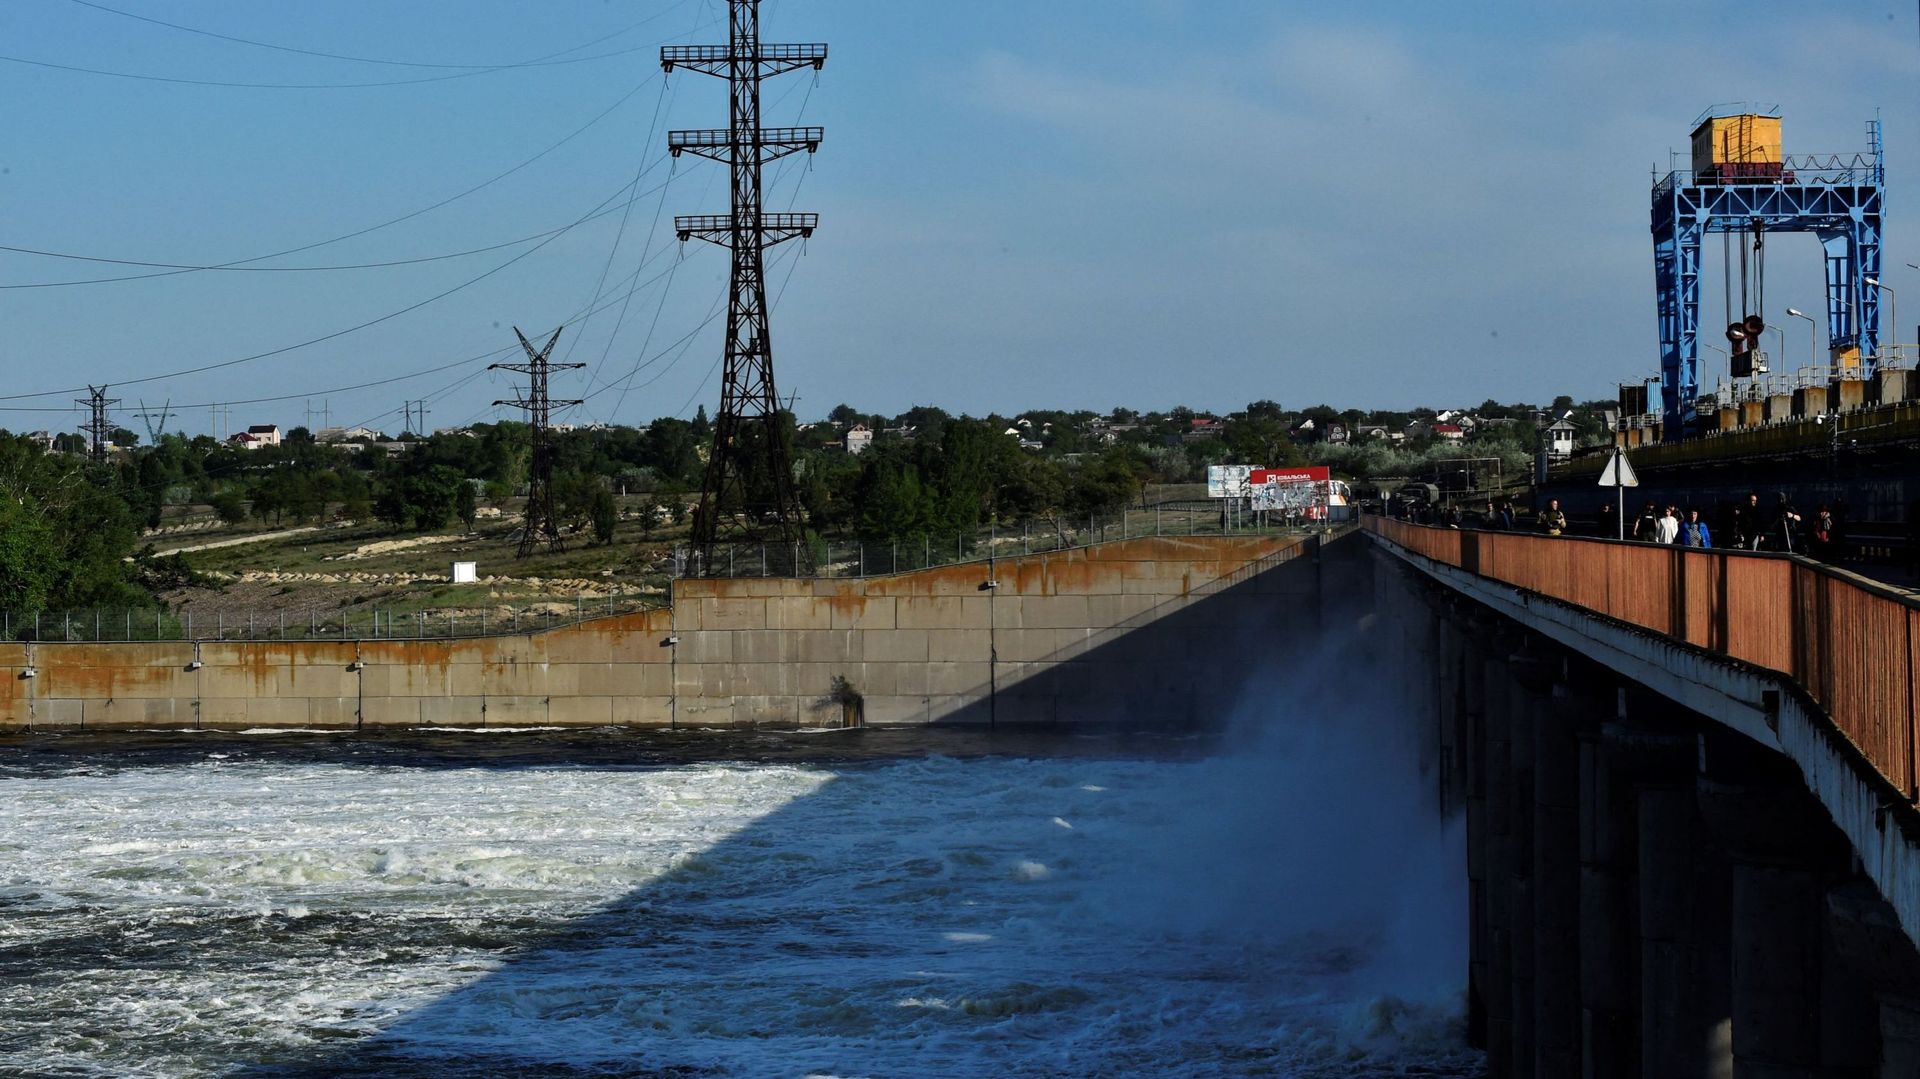 Après avoir accusé les Russes d'avoir miné un barrage d'une centrale hydroélectrique dans la région, risquant de provoquer "une catastrophe à grande échelle", l'Ukraine a réclamé une mission d'observation internationale au barrage de Kakhovka.